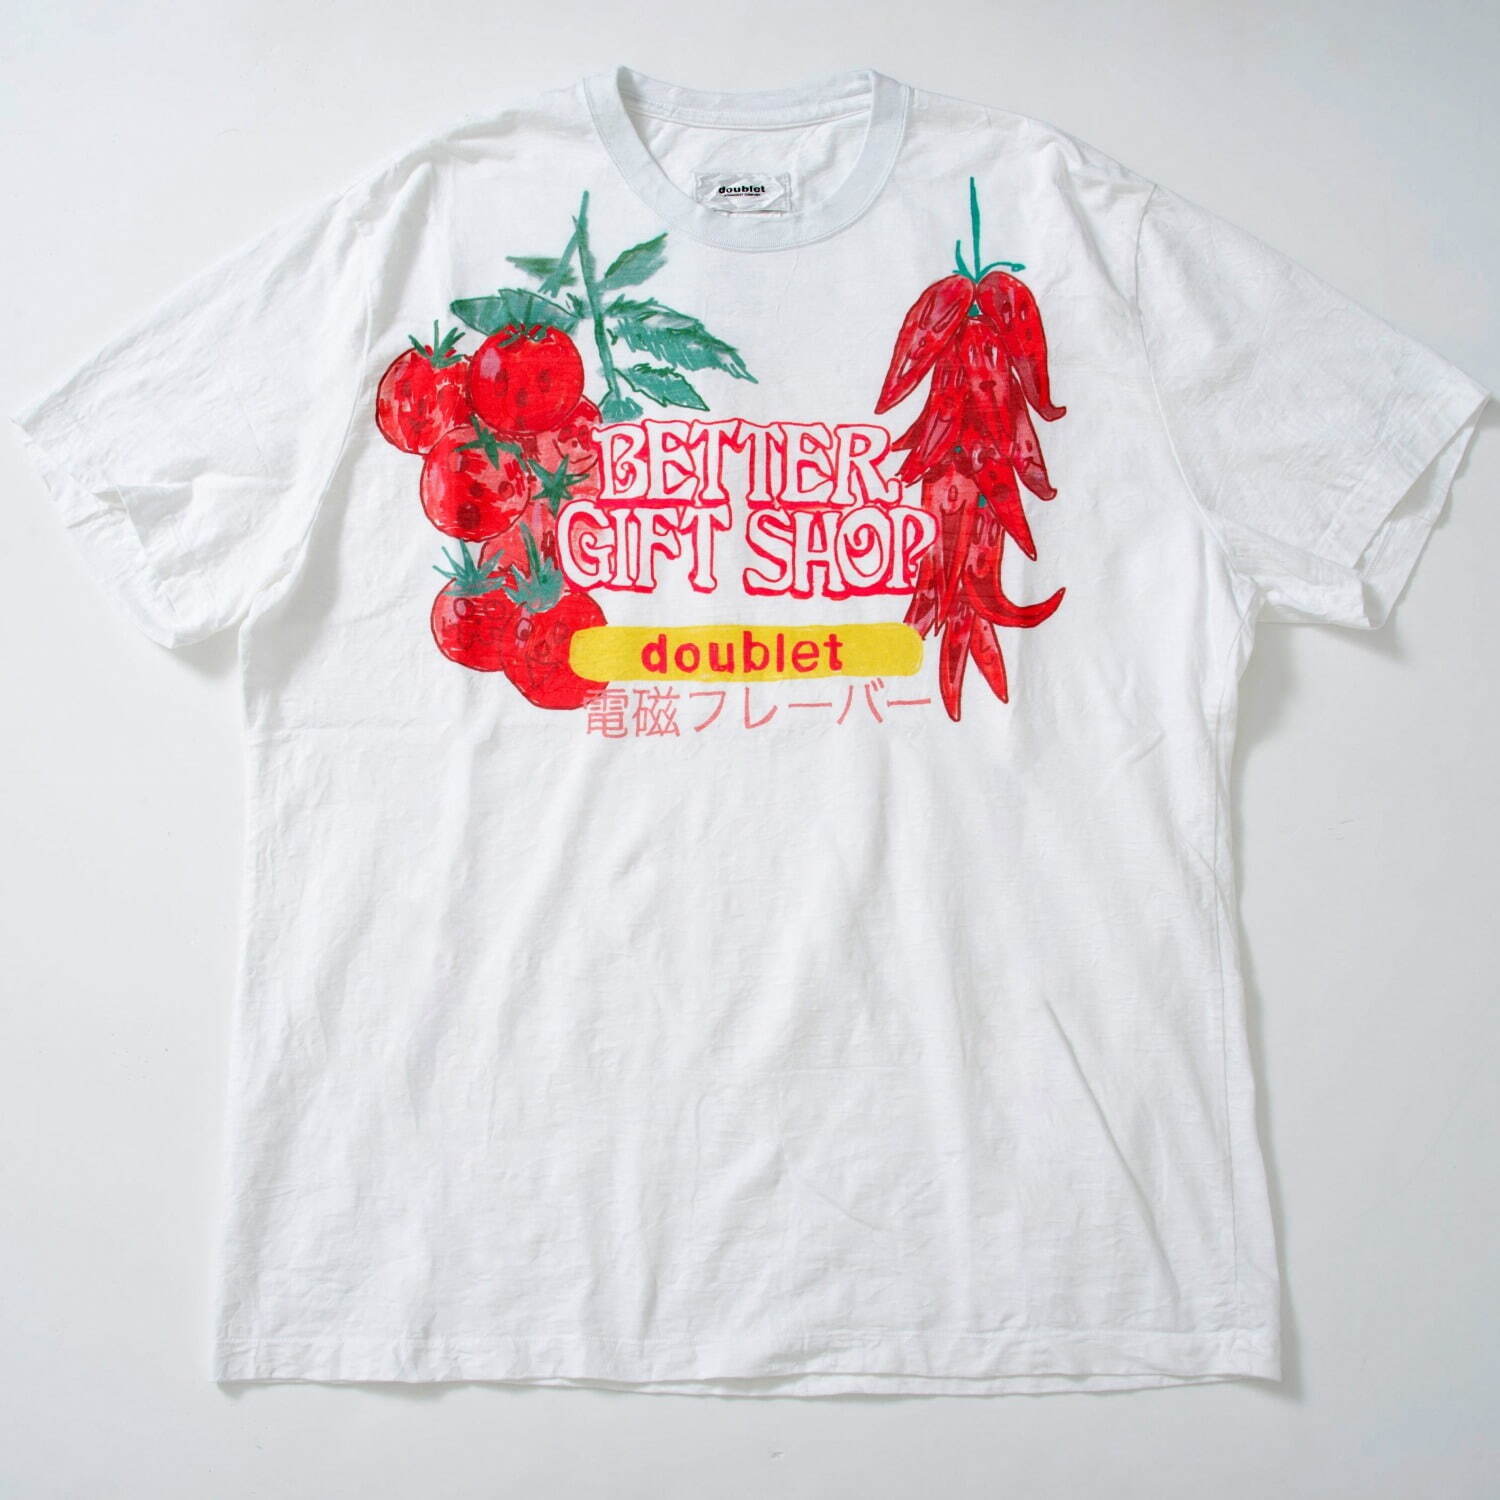 カップTシャツチリトマトdoublet x Better Gift Shop 16,500円